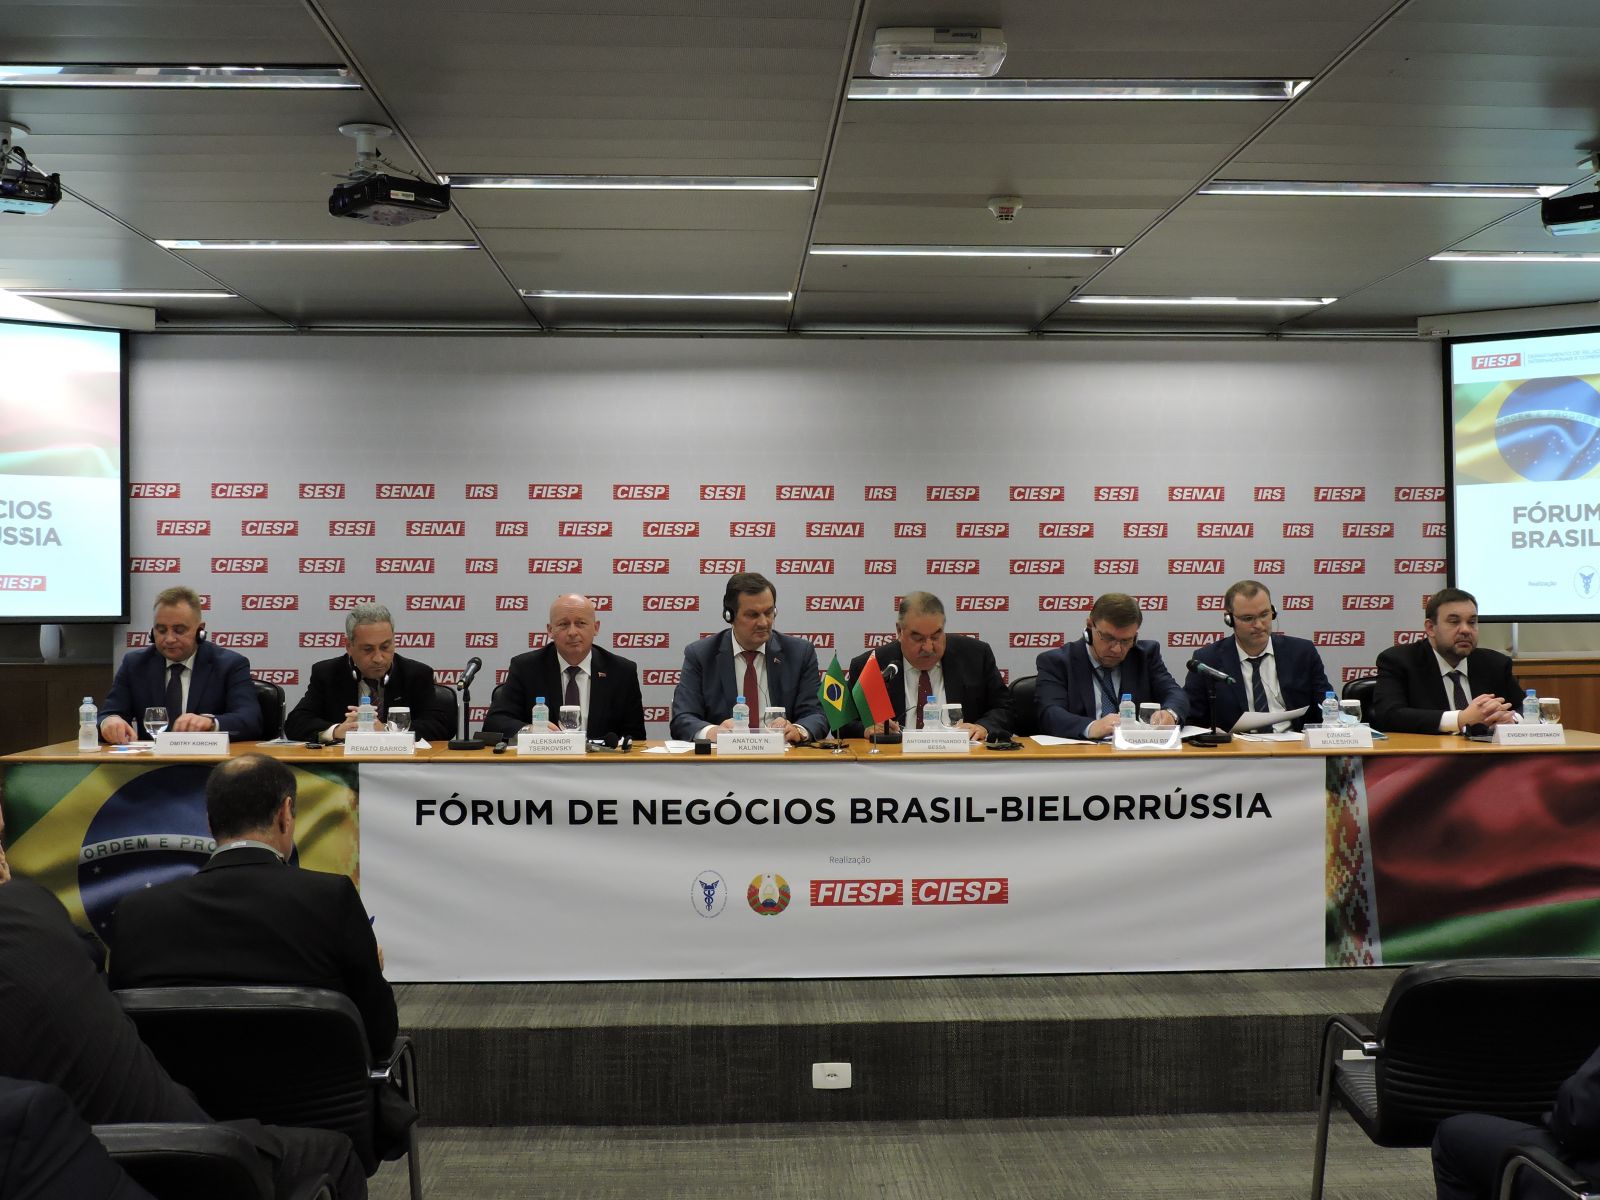 Деловой визит белорусской делегации в Сан-Паулу